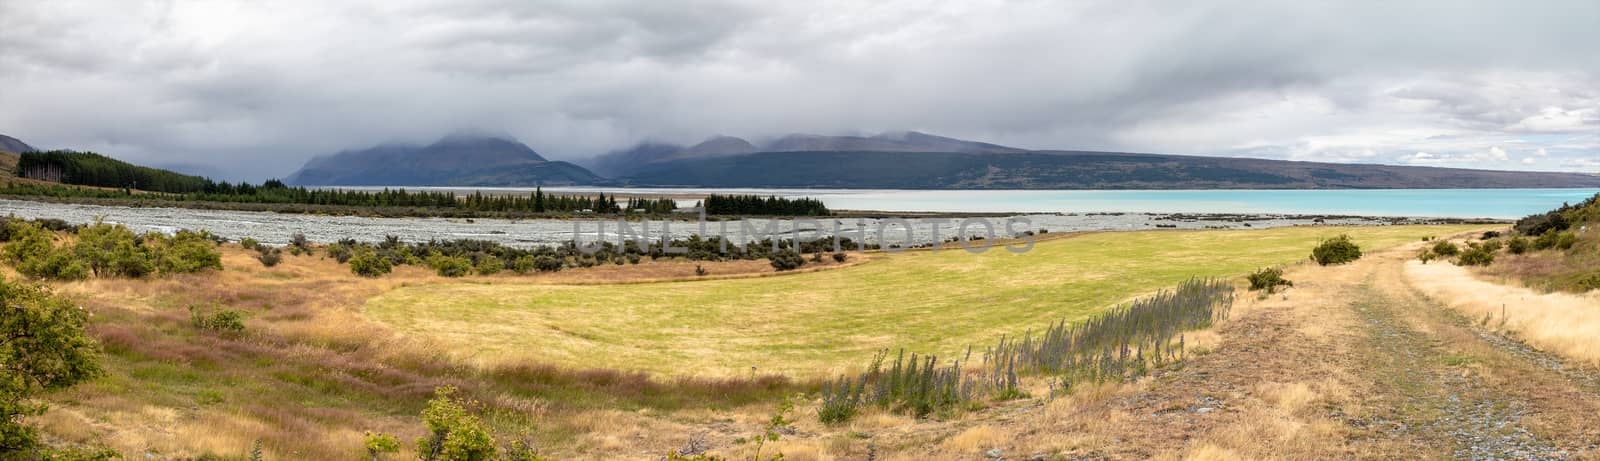 rainy day at Lake Pukaki New Zealand by magann